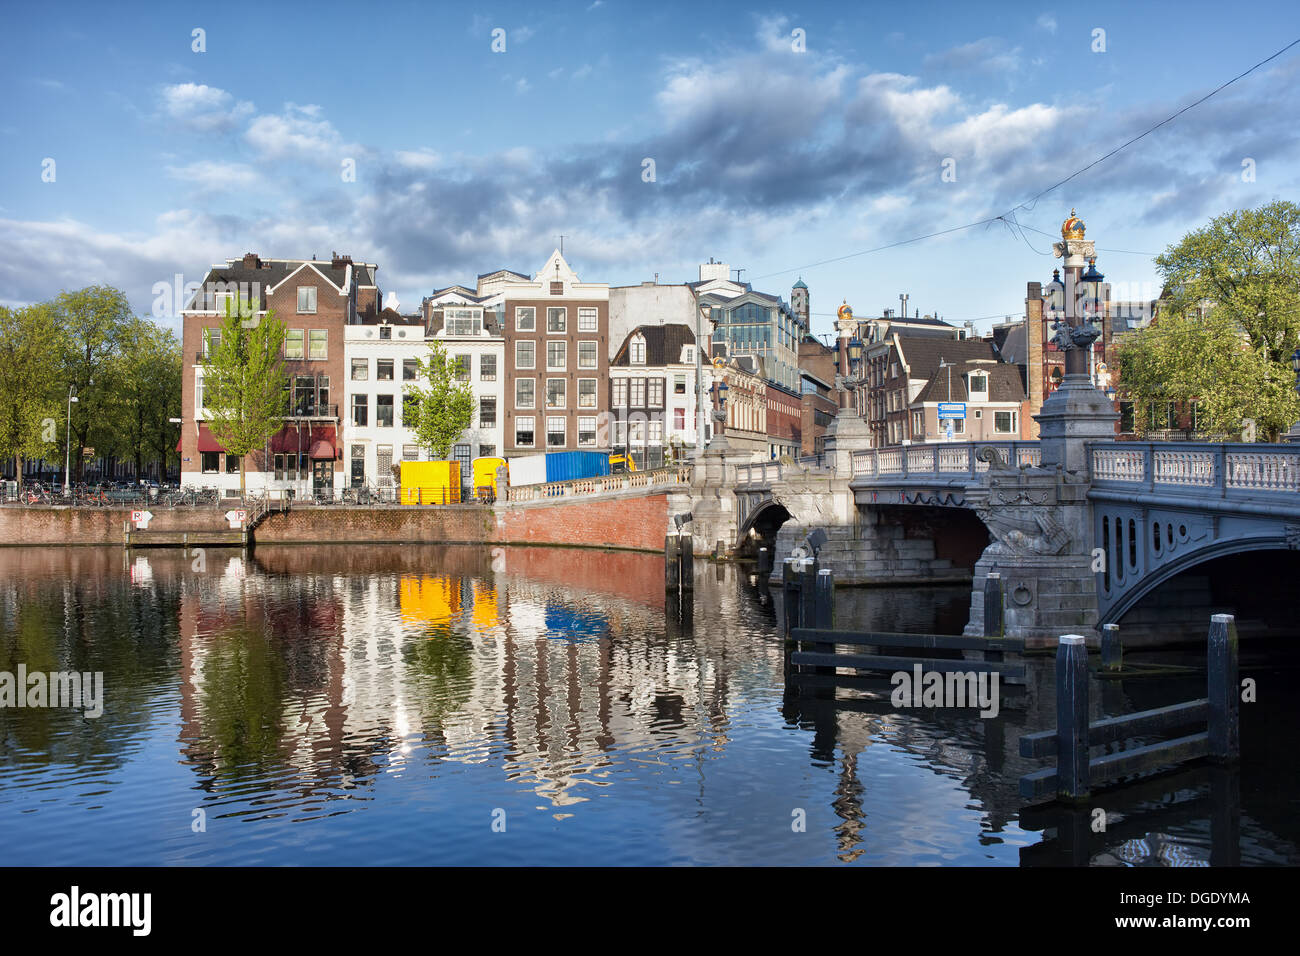 Case con riflessioni sul fiume Amstel acque nella città di Amsterdam, Paesi Bassi, Blue Bridge (Blauwbrug) sulla destra. Foto Stock